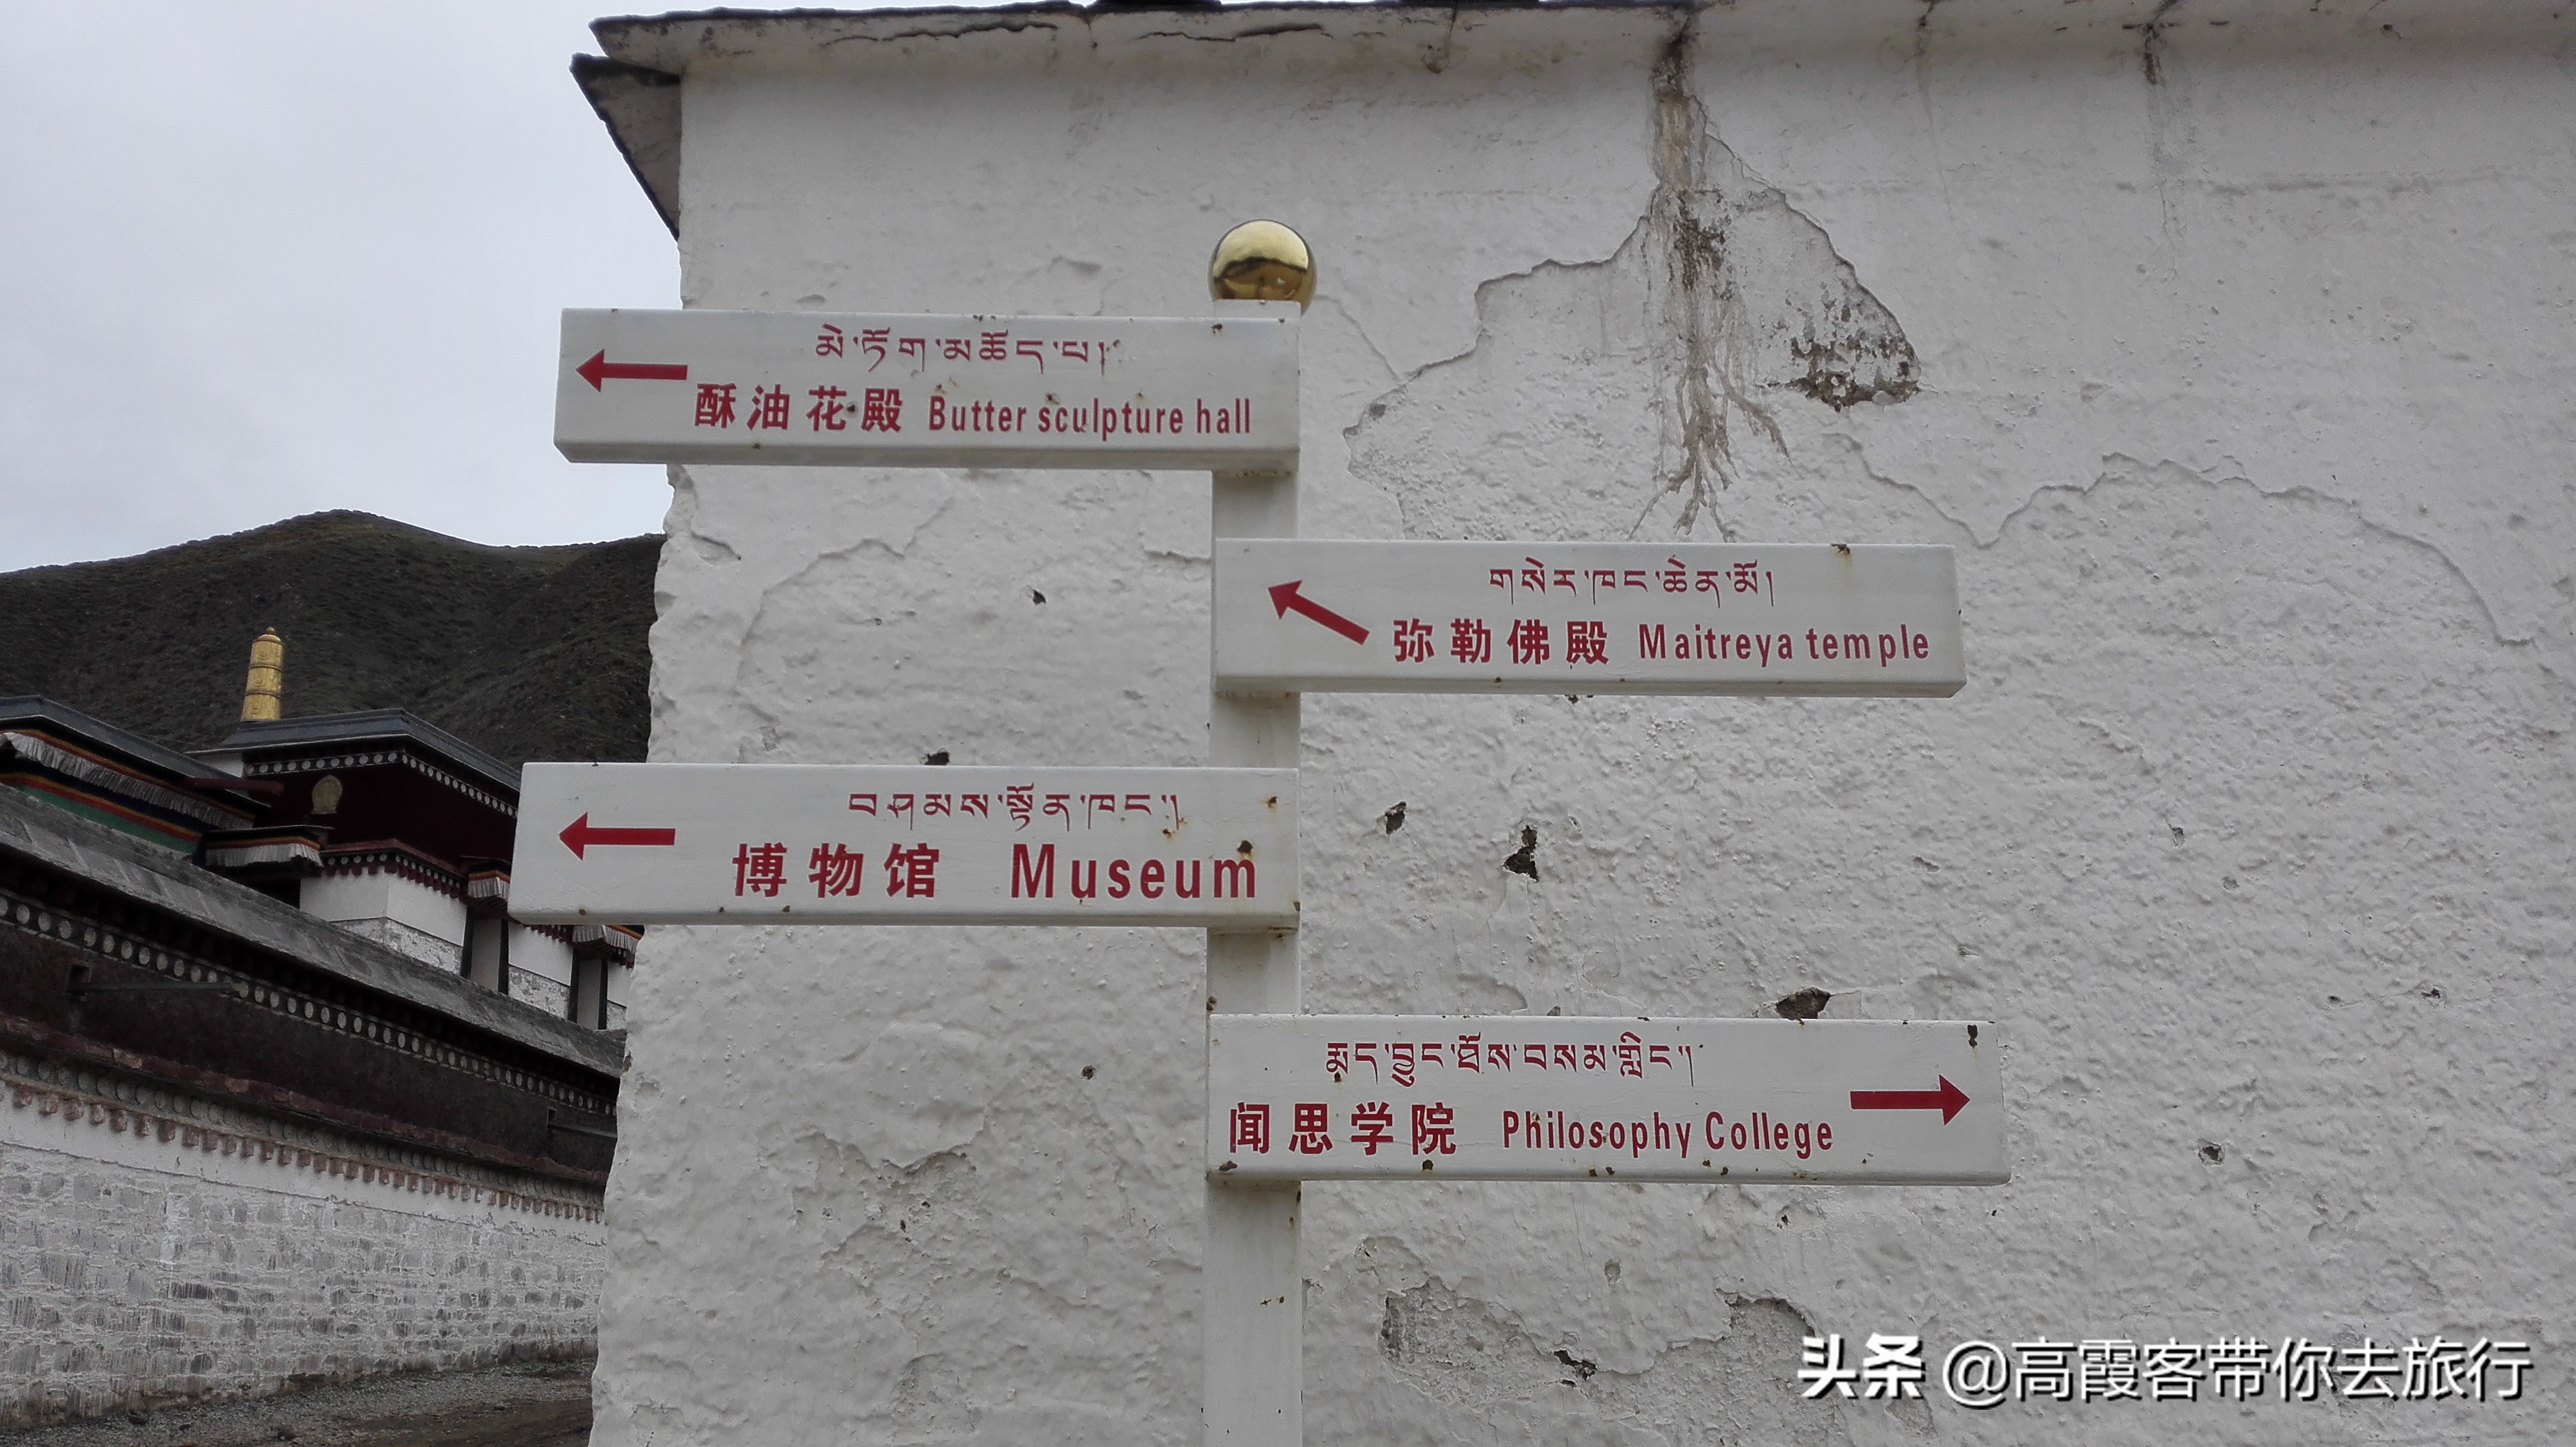 甘肃小环线3日自驾行程第一站甘南拉不楞寺、米拉日巴九层佛阁